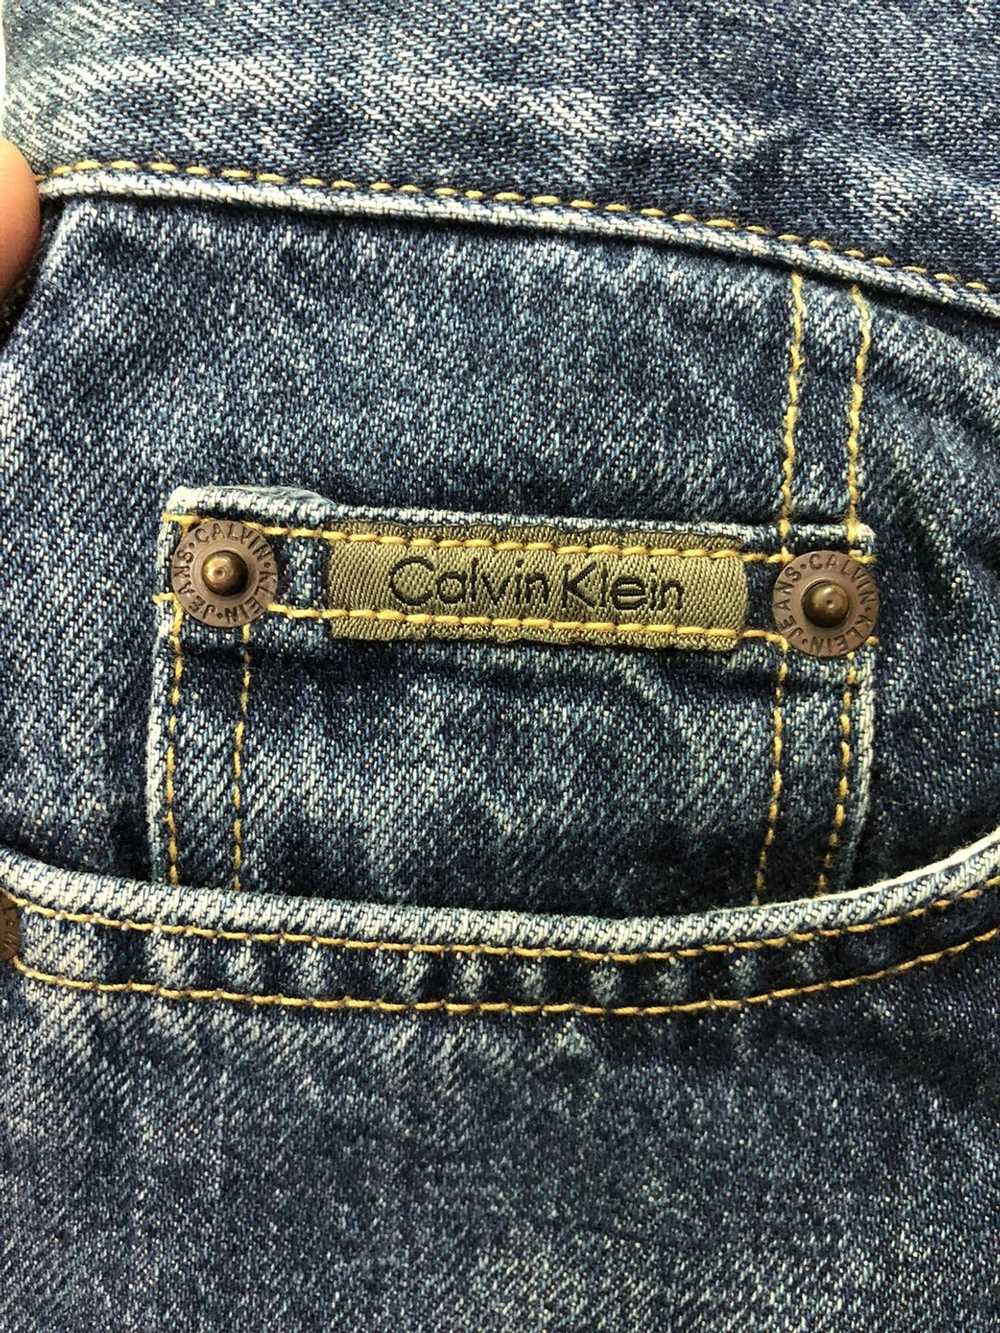 Calvin Klein Calvin Klein denim jeans - image 7